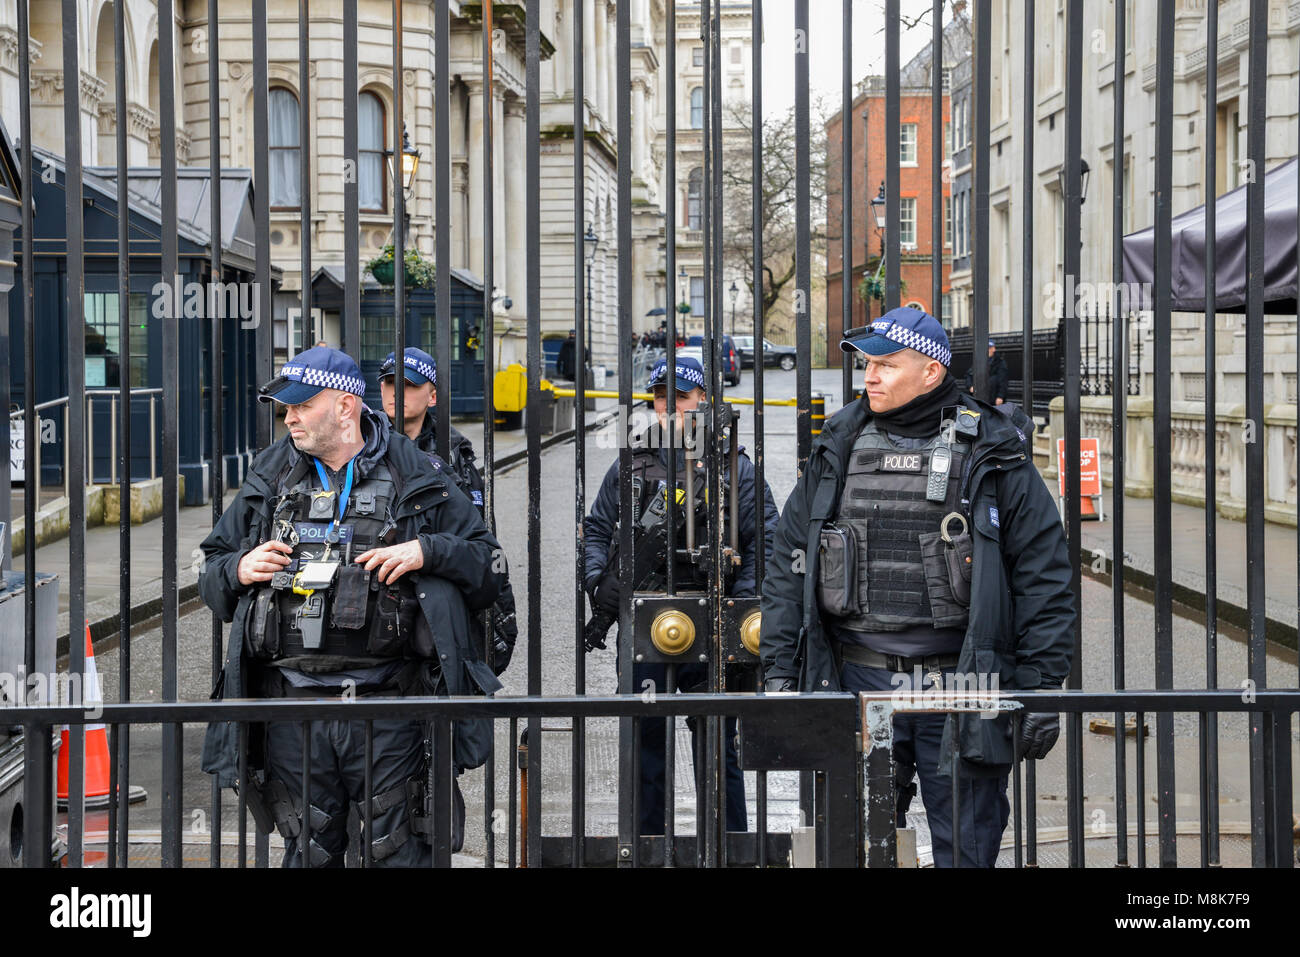 Protezione pesante presenza di fronte all'Ufficio del Primo Ministro a 10 Downing Street nella City of Westminster, Londra, Inghilterra, Regno Unito Foto Stock